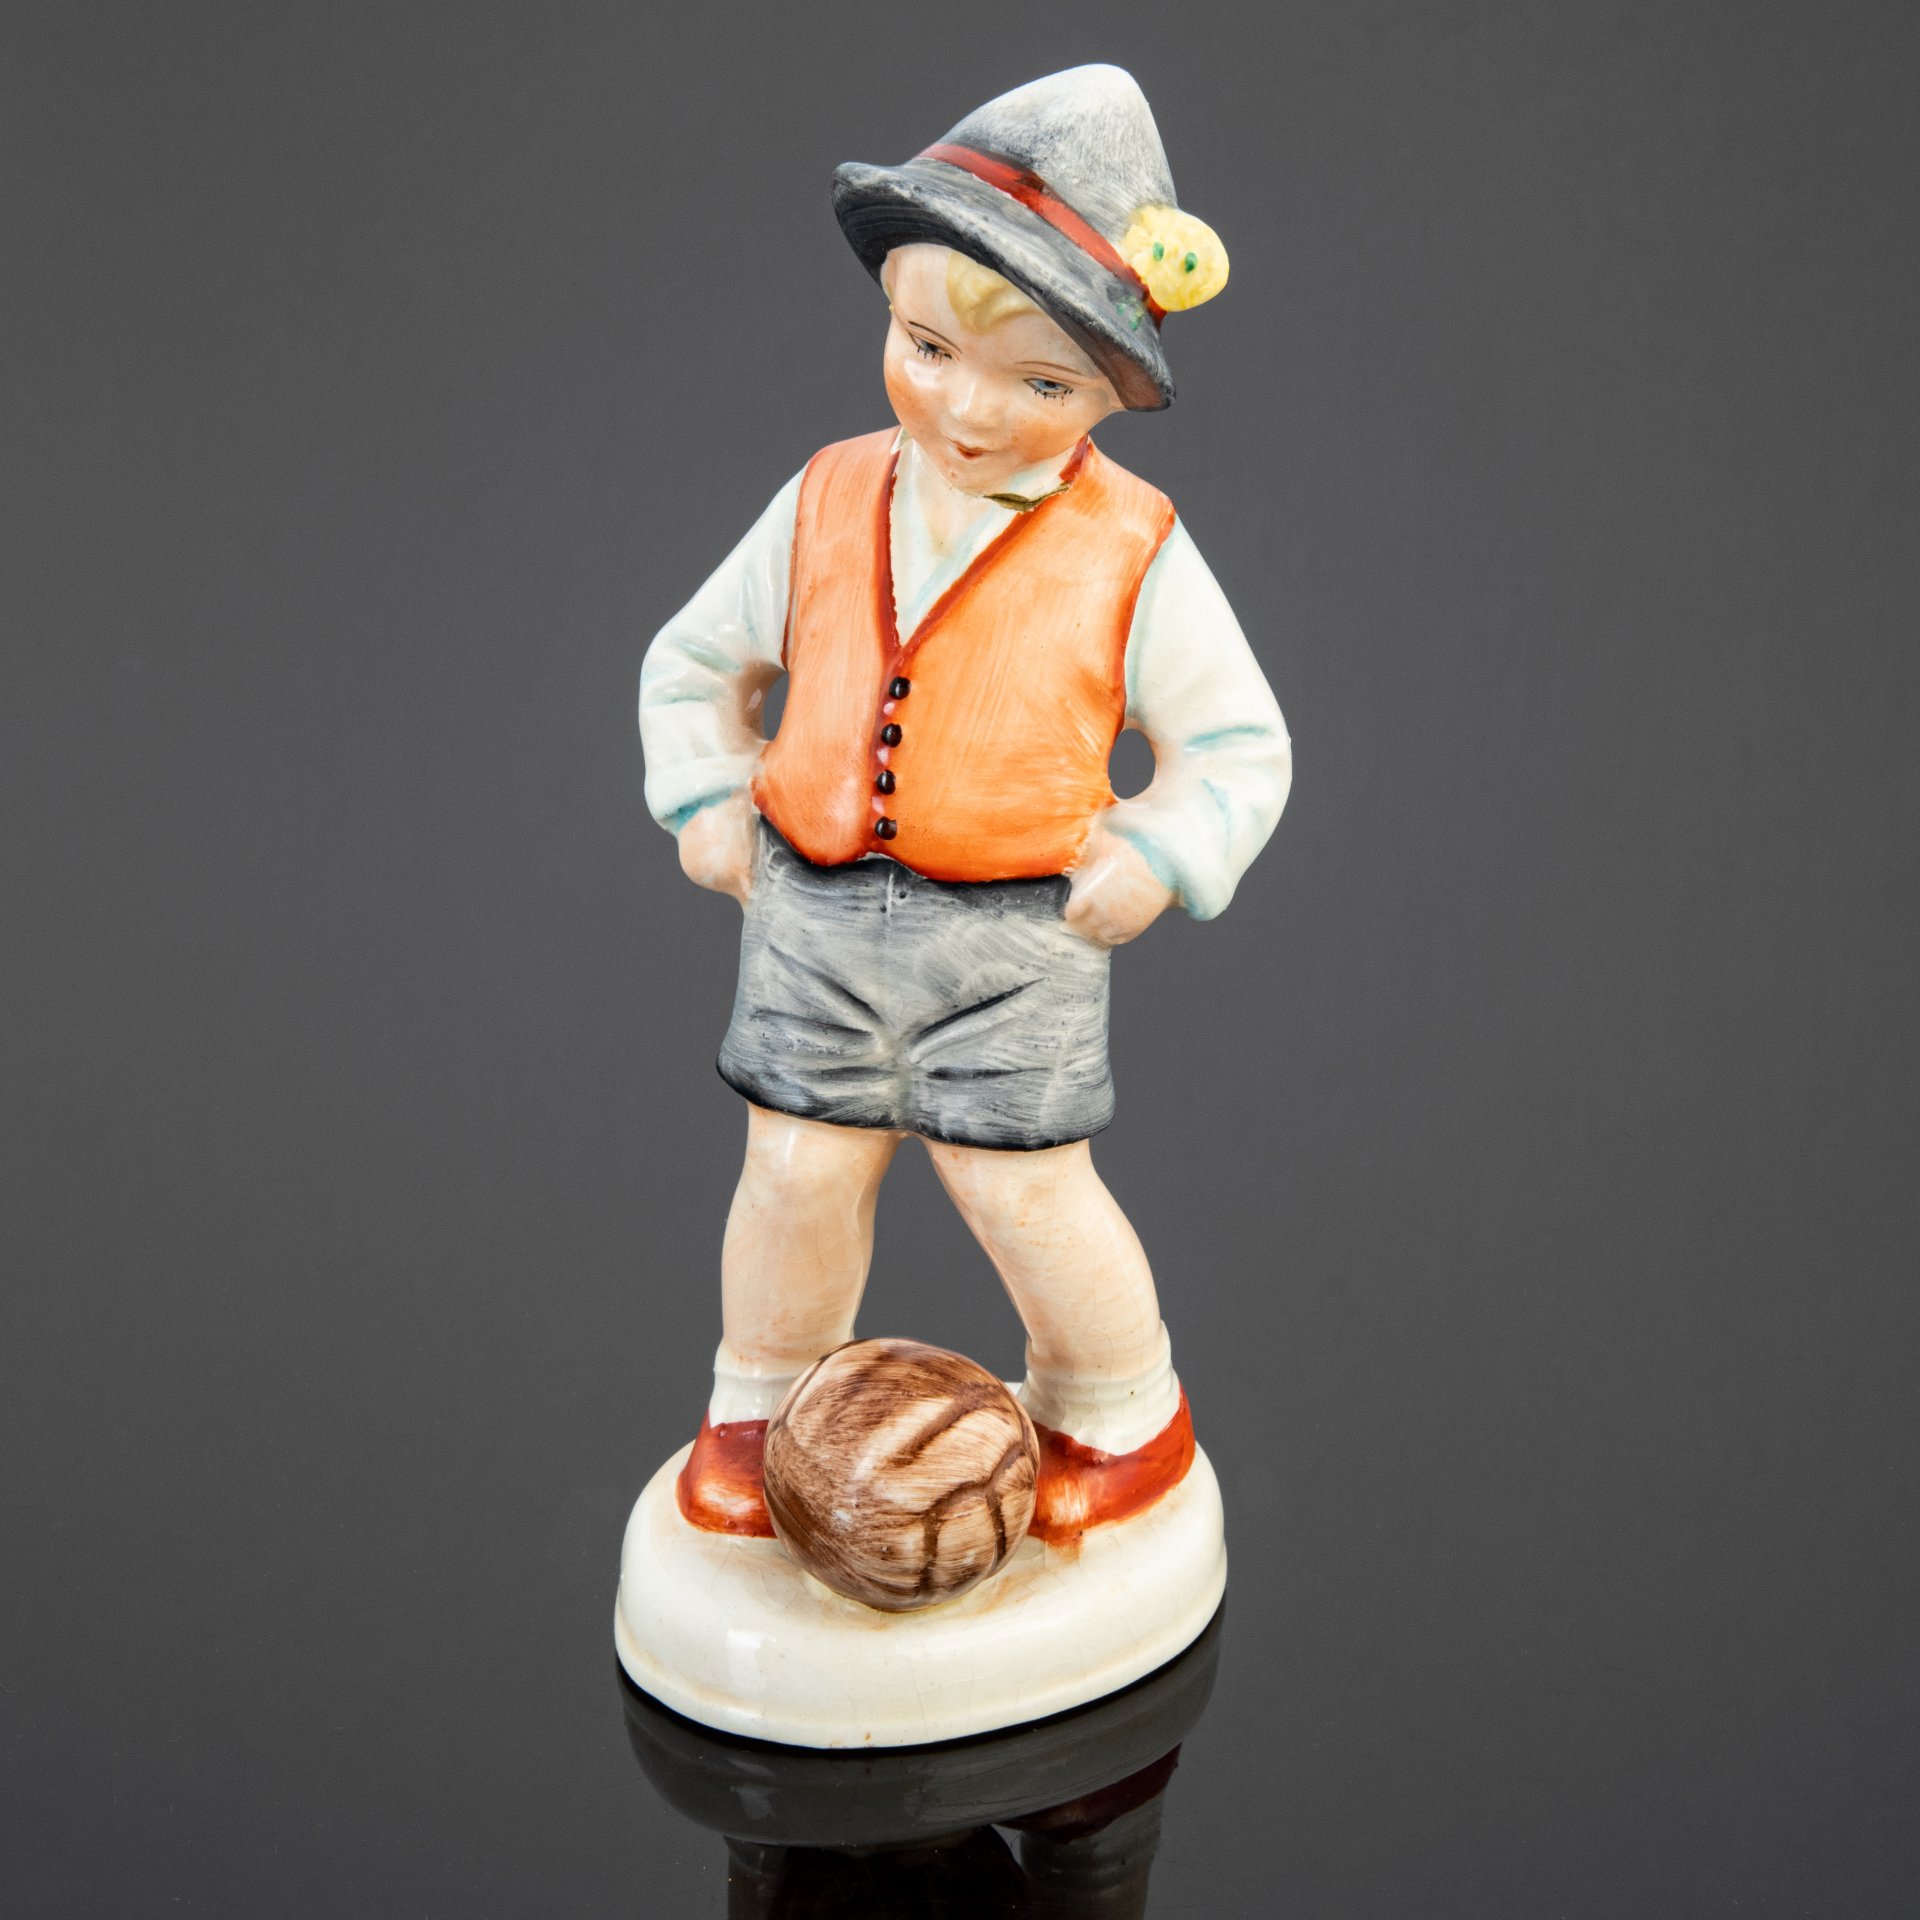 Статуэтка "Мальчик с мячом" (Футболист), фаянс, роспись, Sitzendorfer Porzellanmanufaktur, Германия, 1920-1950 гг.